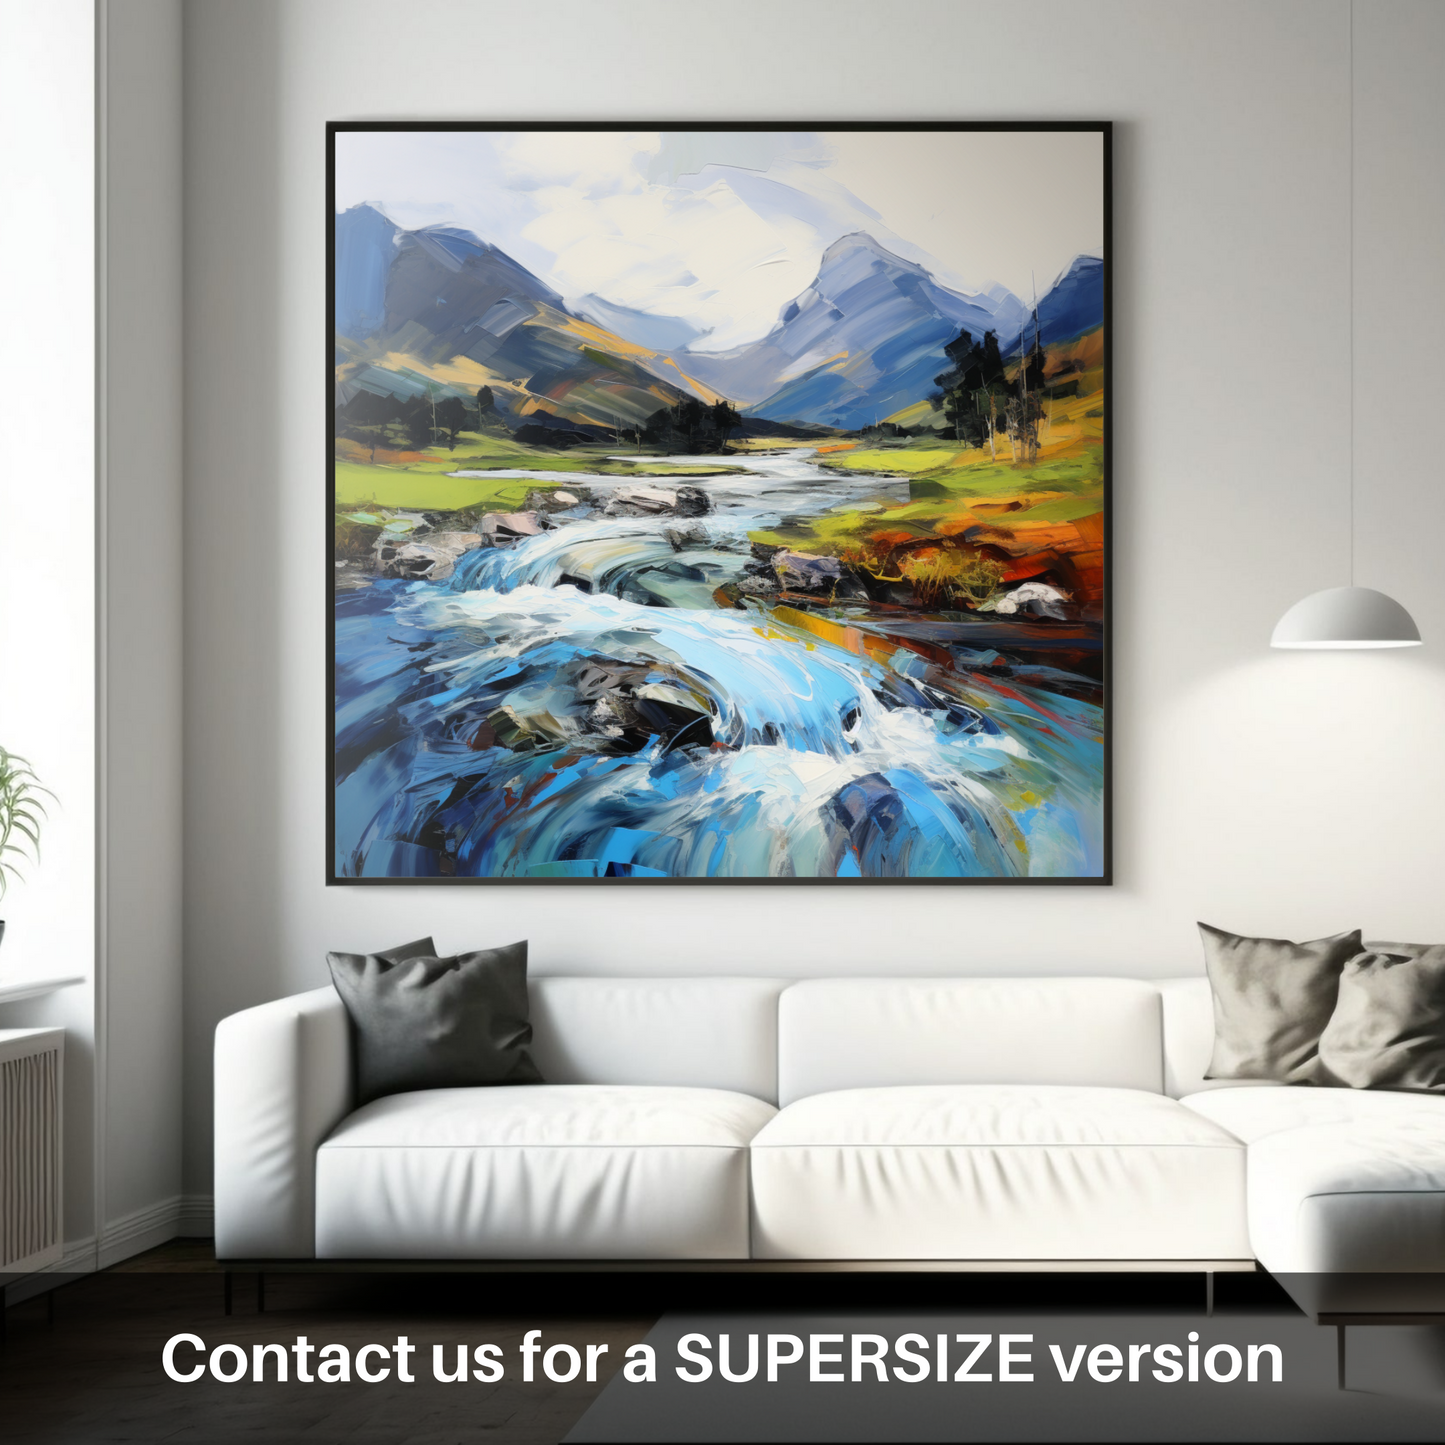 Huge supersize print of River Coe, Glencoe, Highlands